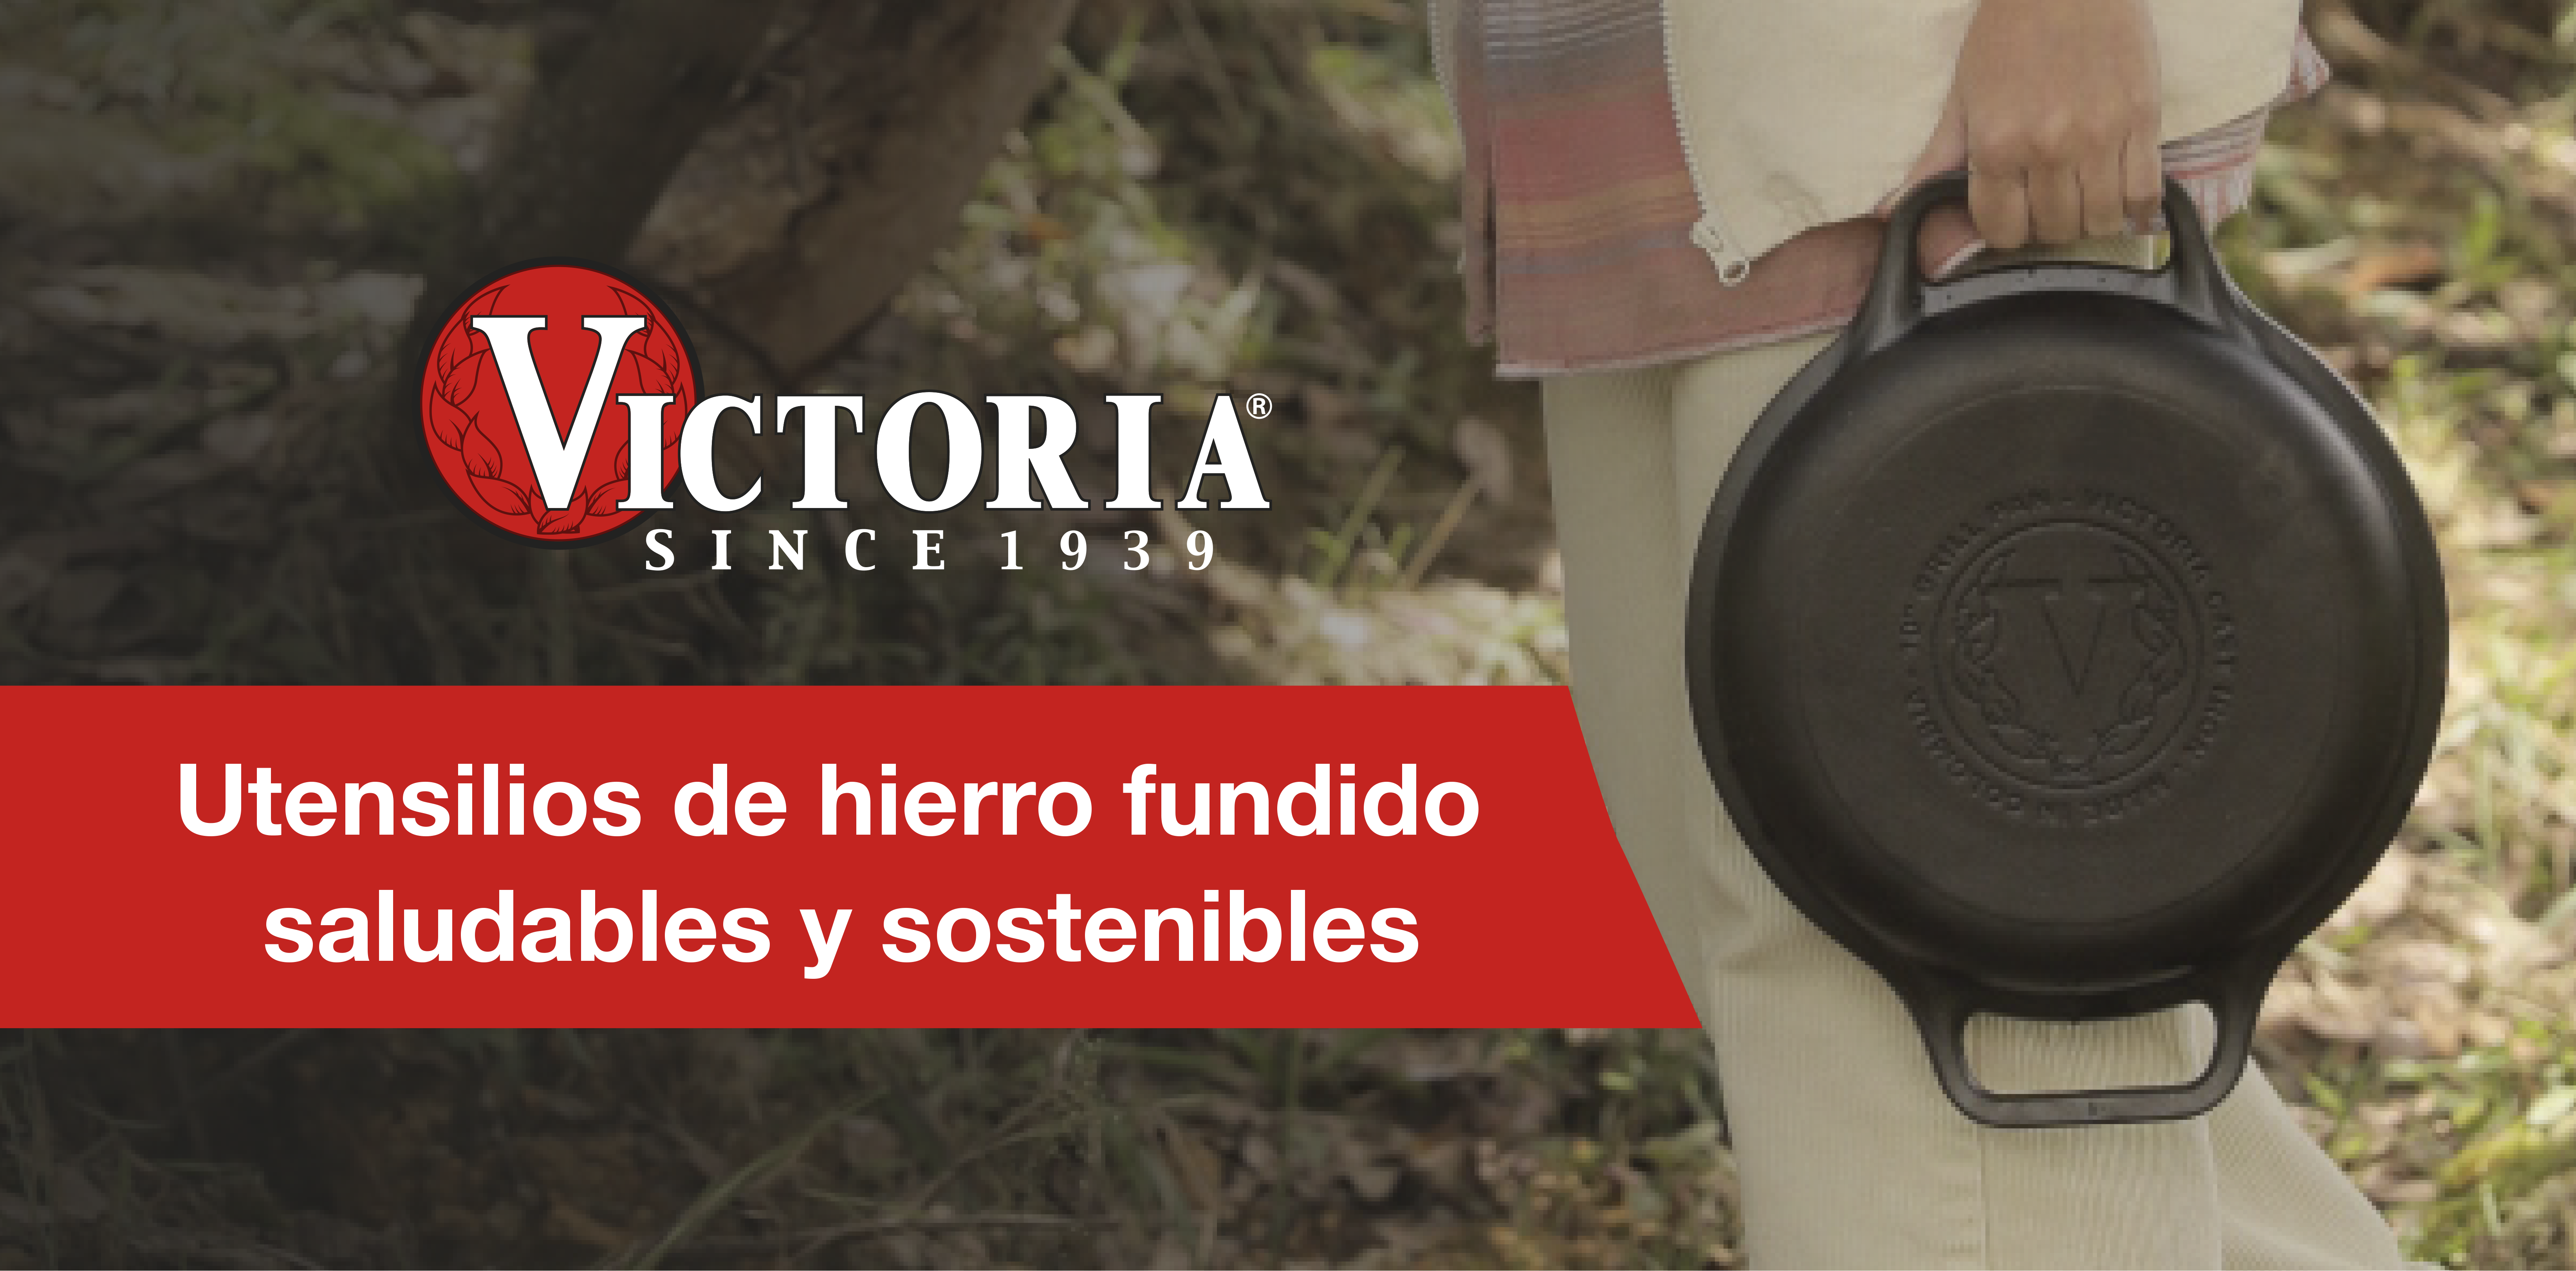 Plancha Rectangular Reversible c/ asa de Hierro Precurado 33x21cm. VICTORIA  made in Colombia.